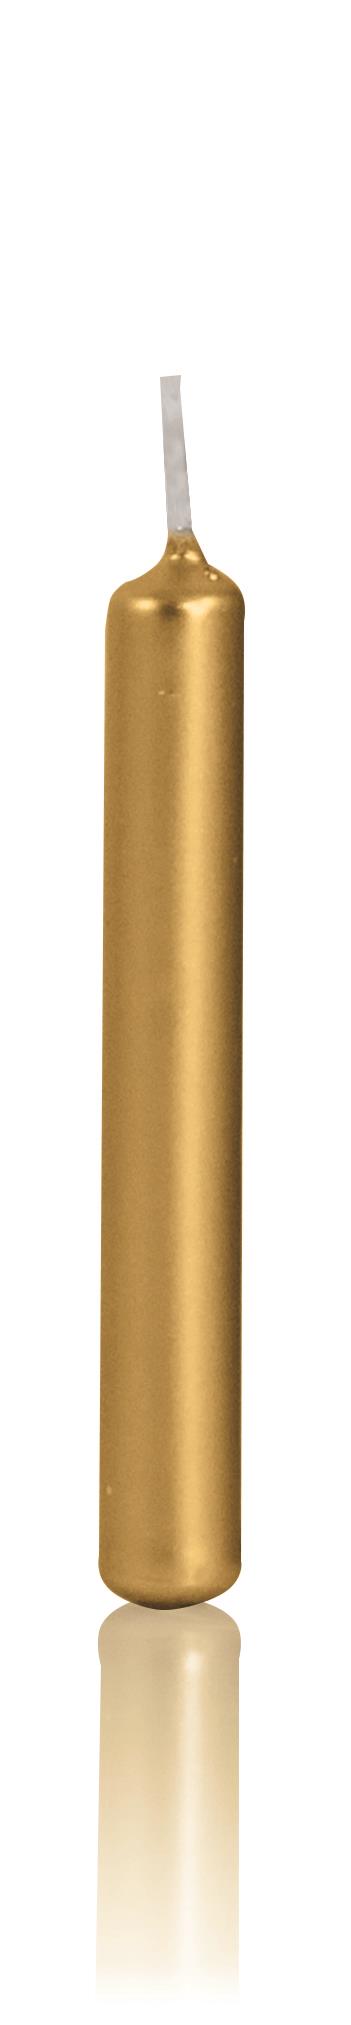 20er Baumkerzen lackiert 96/12,8mm (Gold)